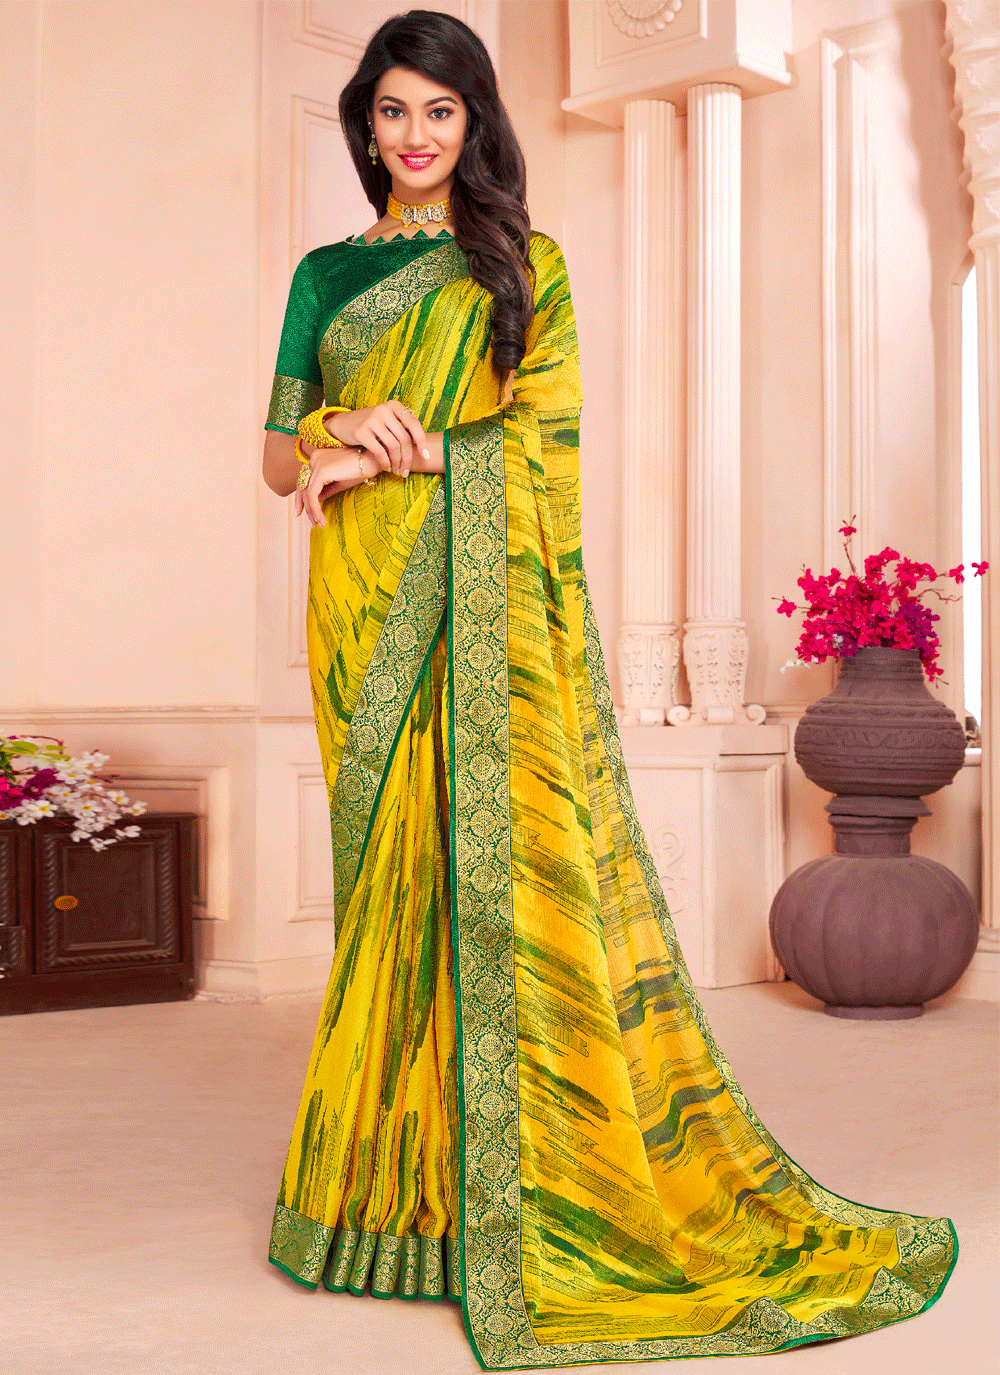 Lime Green silk Kota saree with mirror work and black temple border #saree # blouse … | Designer saree blouse patterns, Stylish sarees, Indian saree  blouses designs